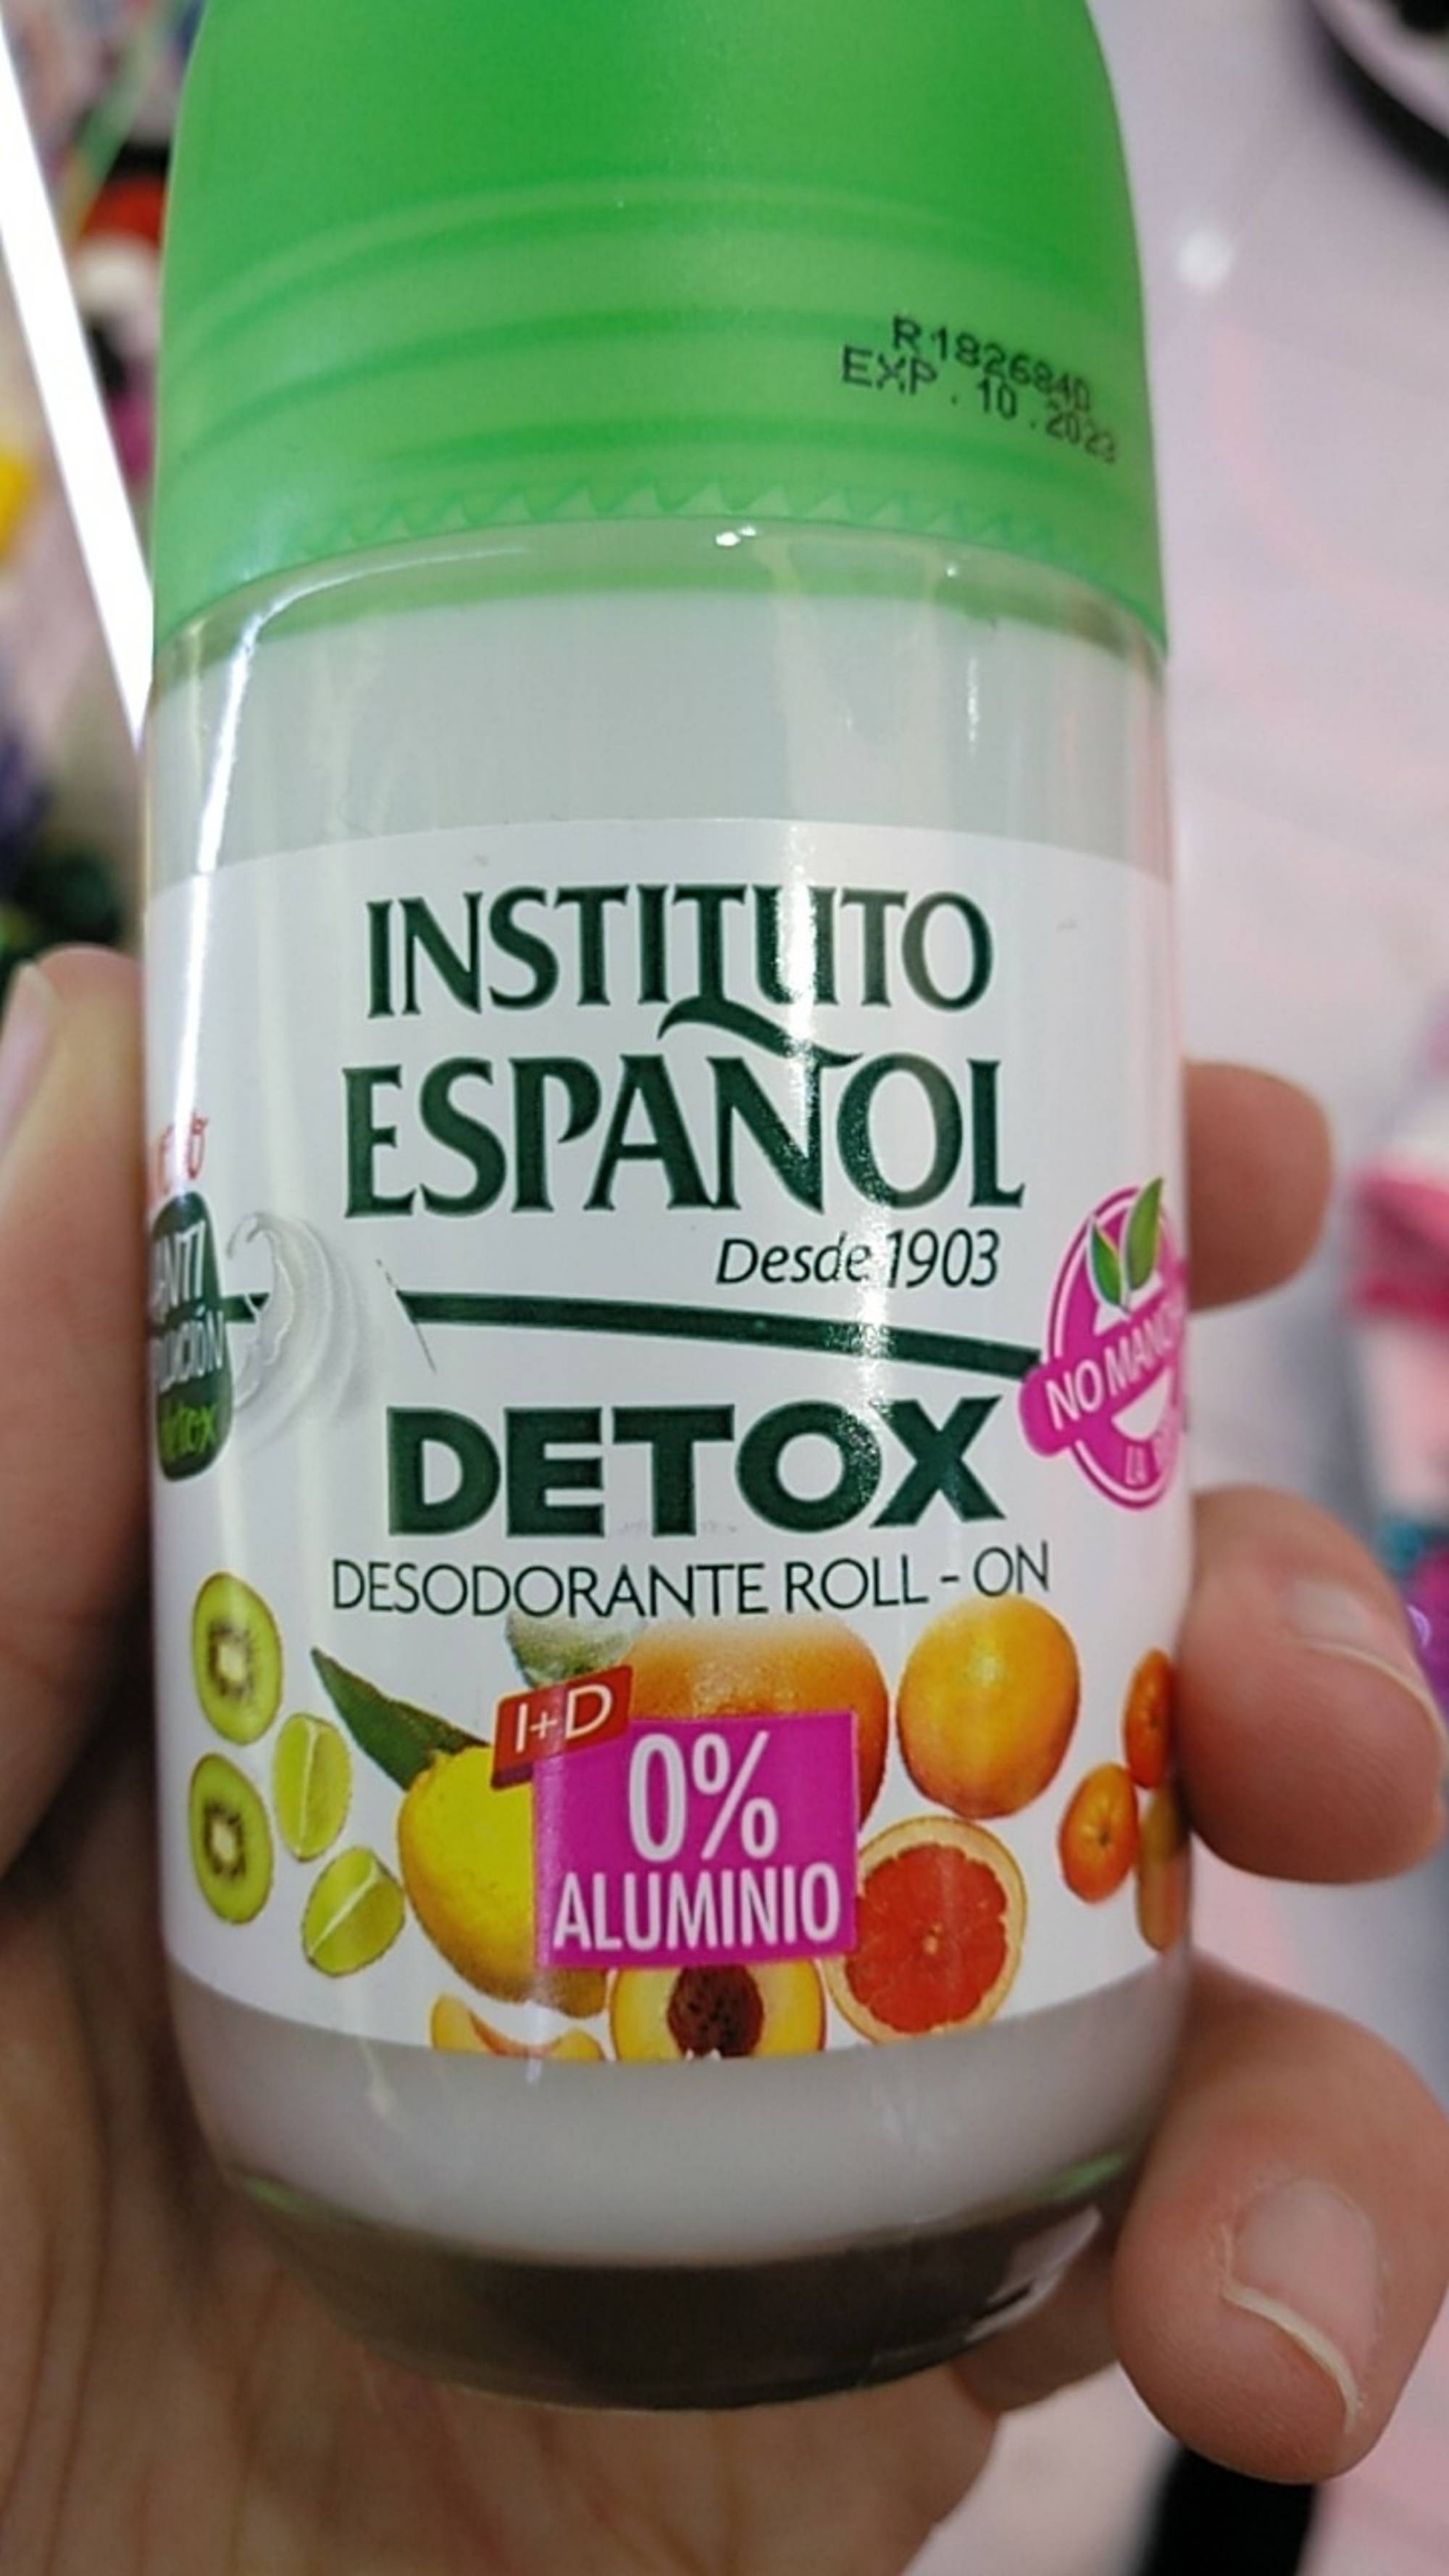 INSTITUTO ESPANOL - Detox - Desodorante roll-on